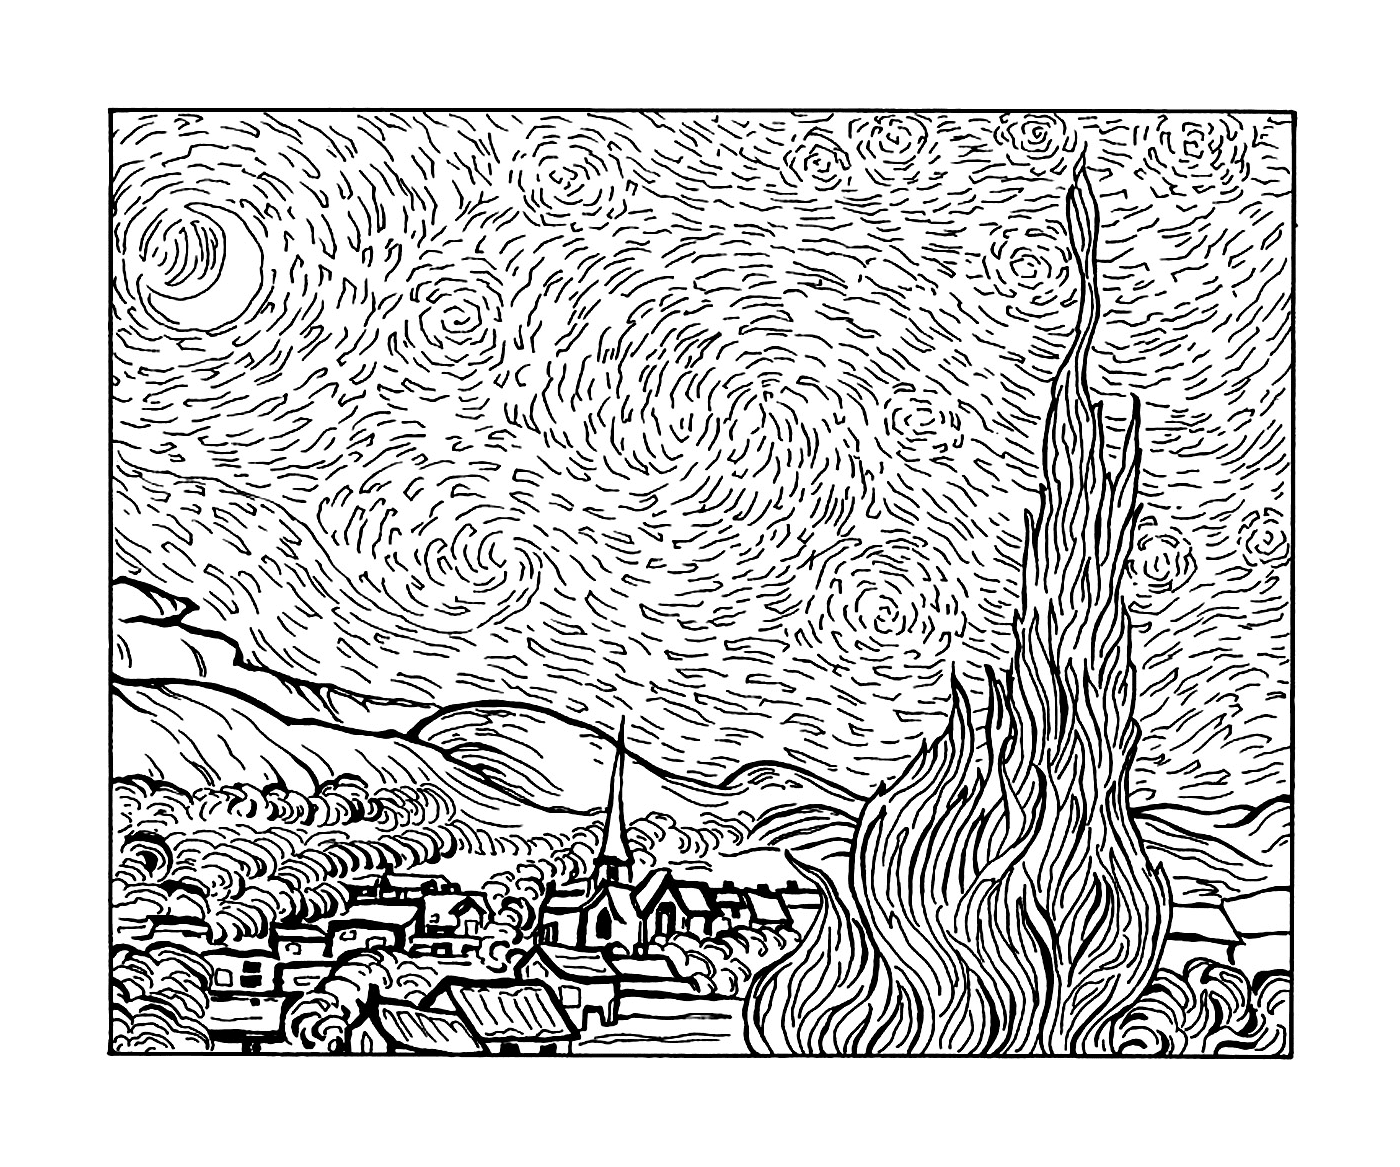  Uma cidade e uma árvore de acordo com a Noite Estrelada de Van Gogh 